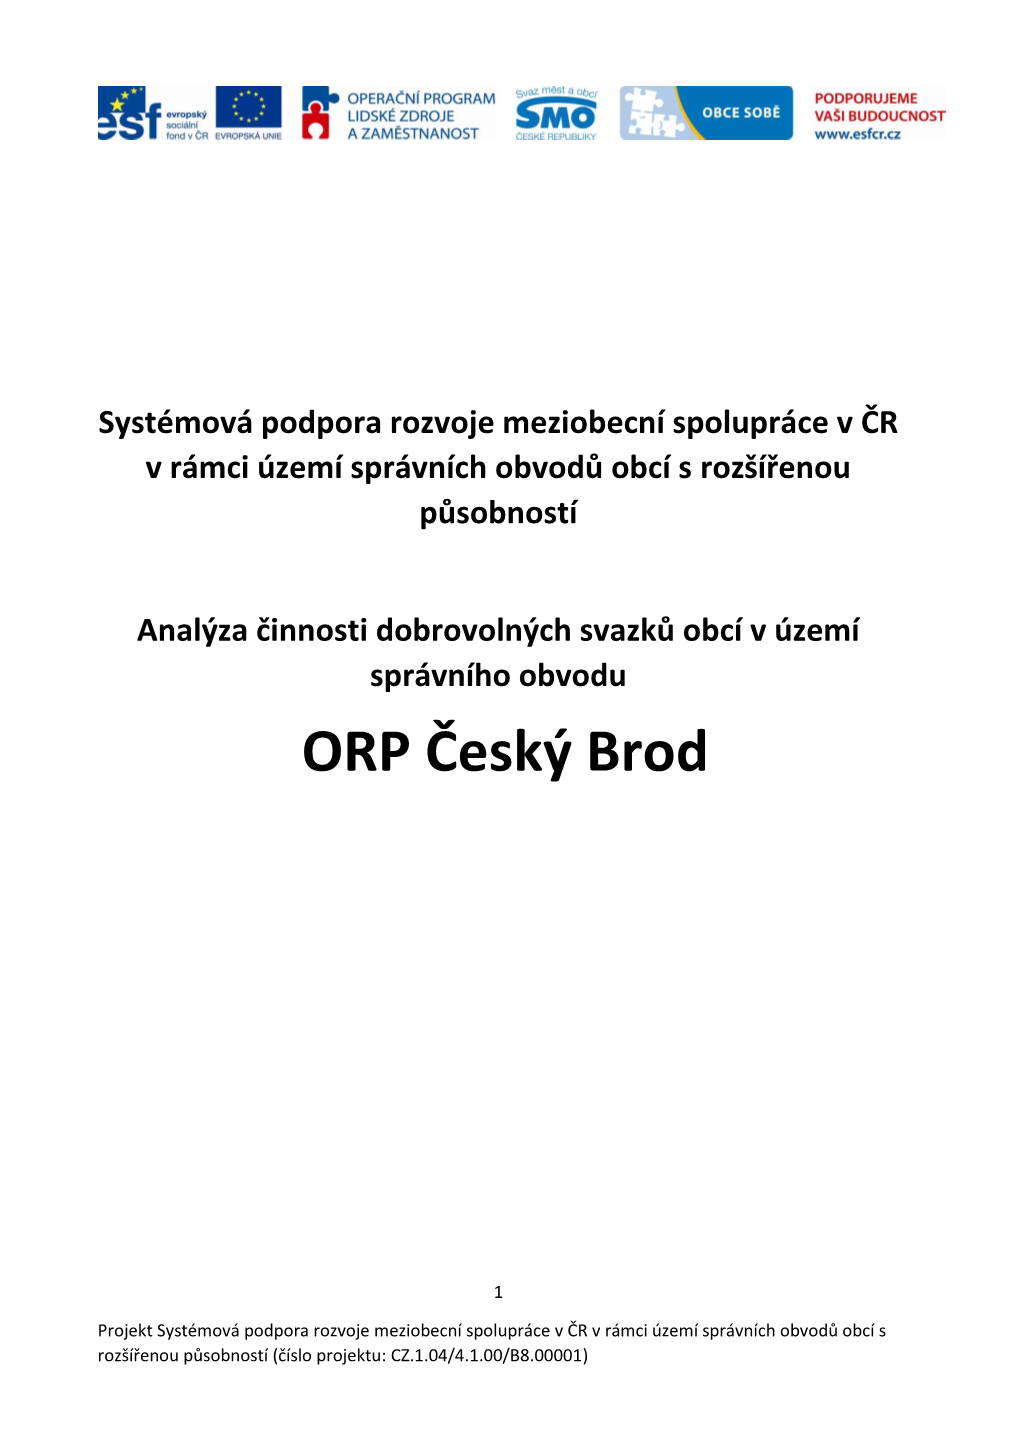 ORP Český Brod